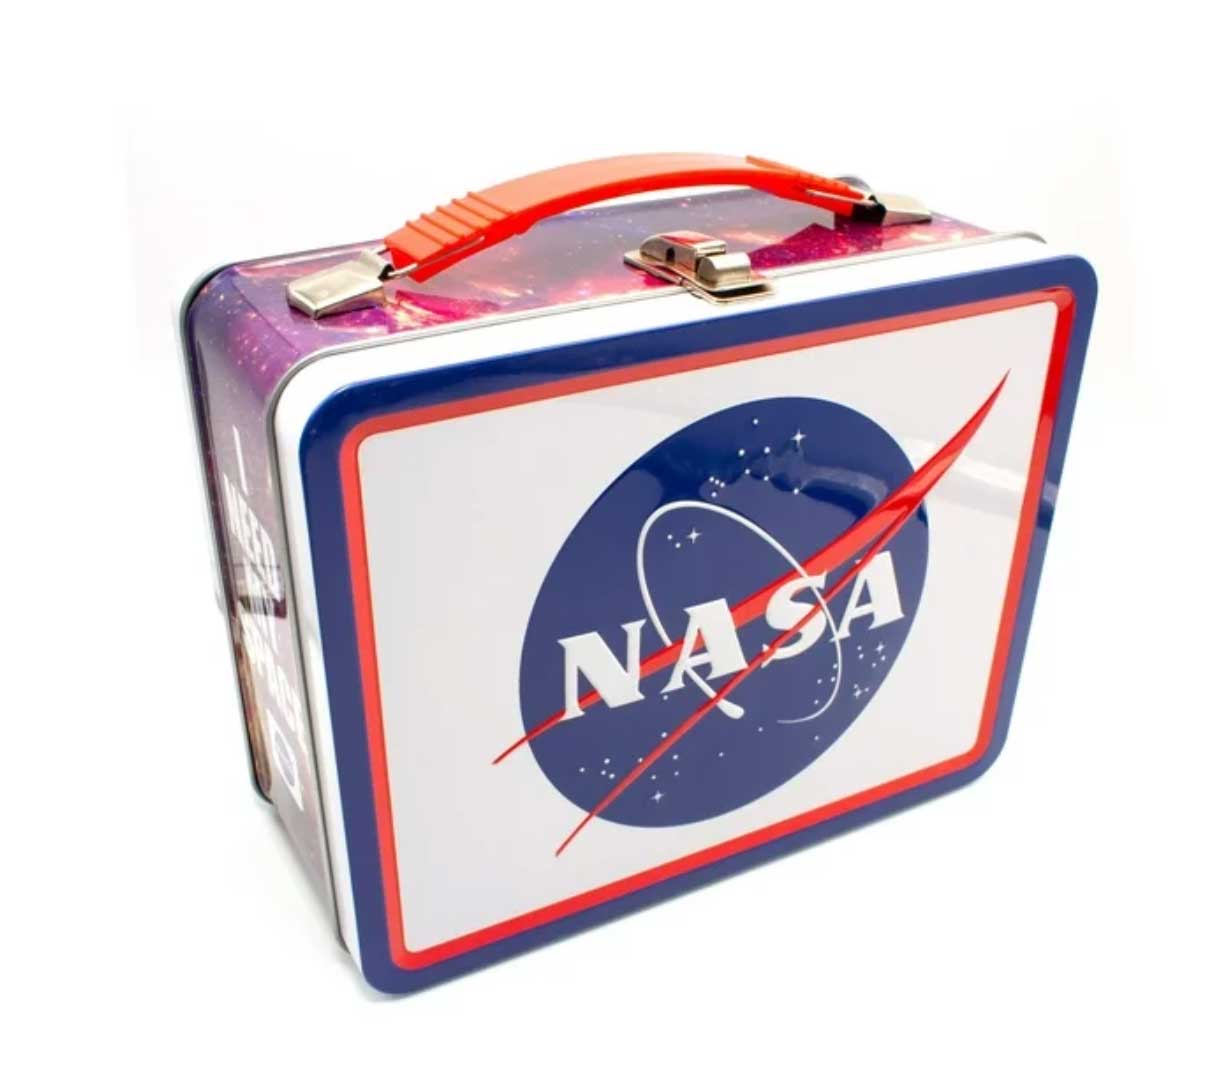 New NASA-themed items